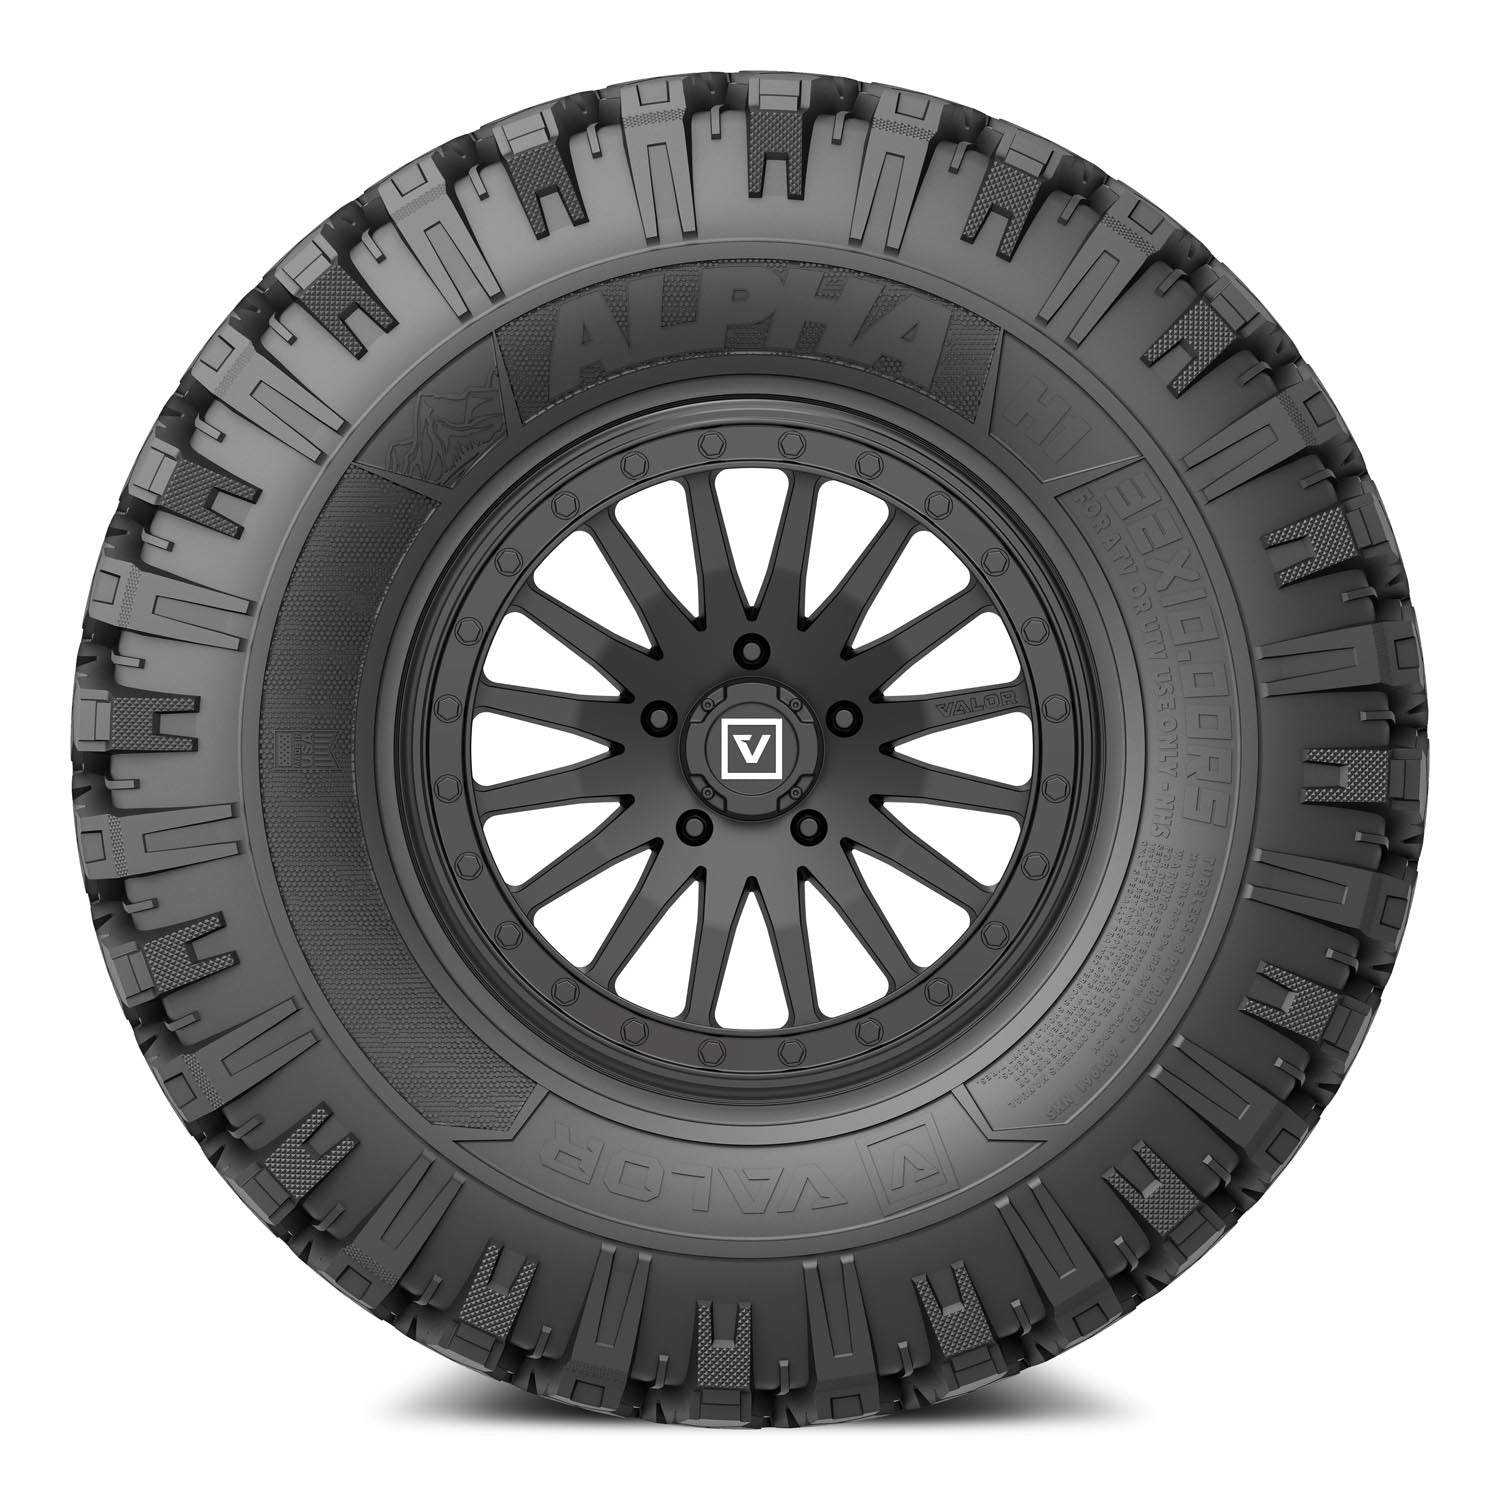 Valor Offroad UTV Tires and wheels - V06 UTV Wheel on Alpha UTV Tire